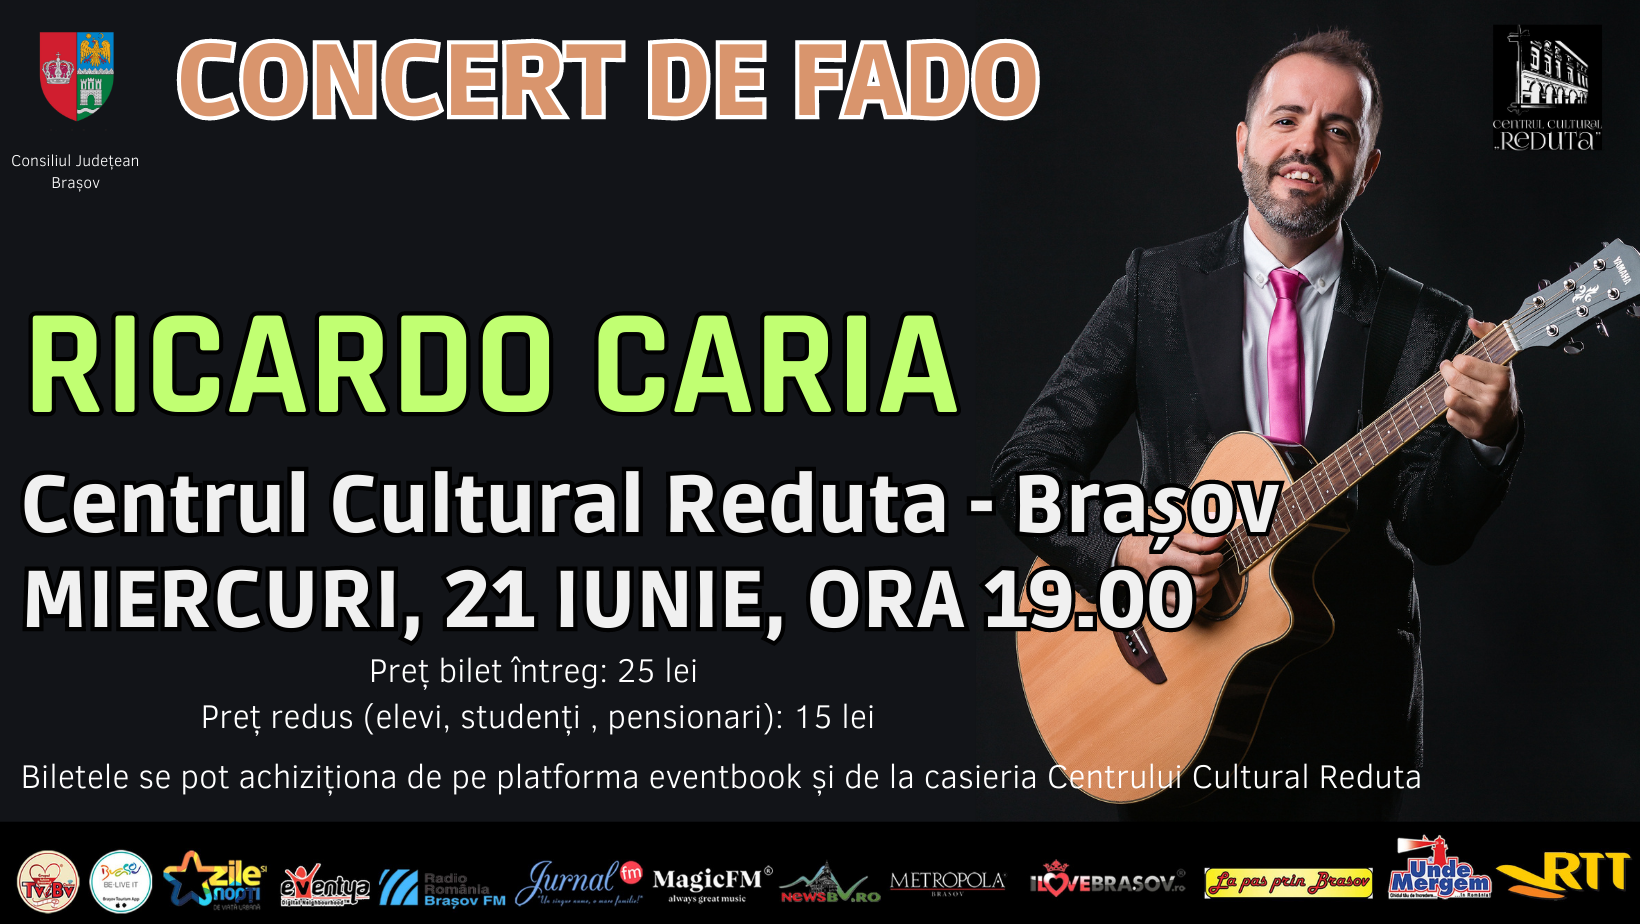 Concert de muzică fado cu artistul portughez RICARDO CARIA